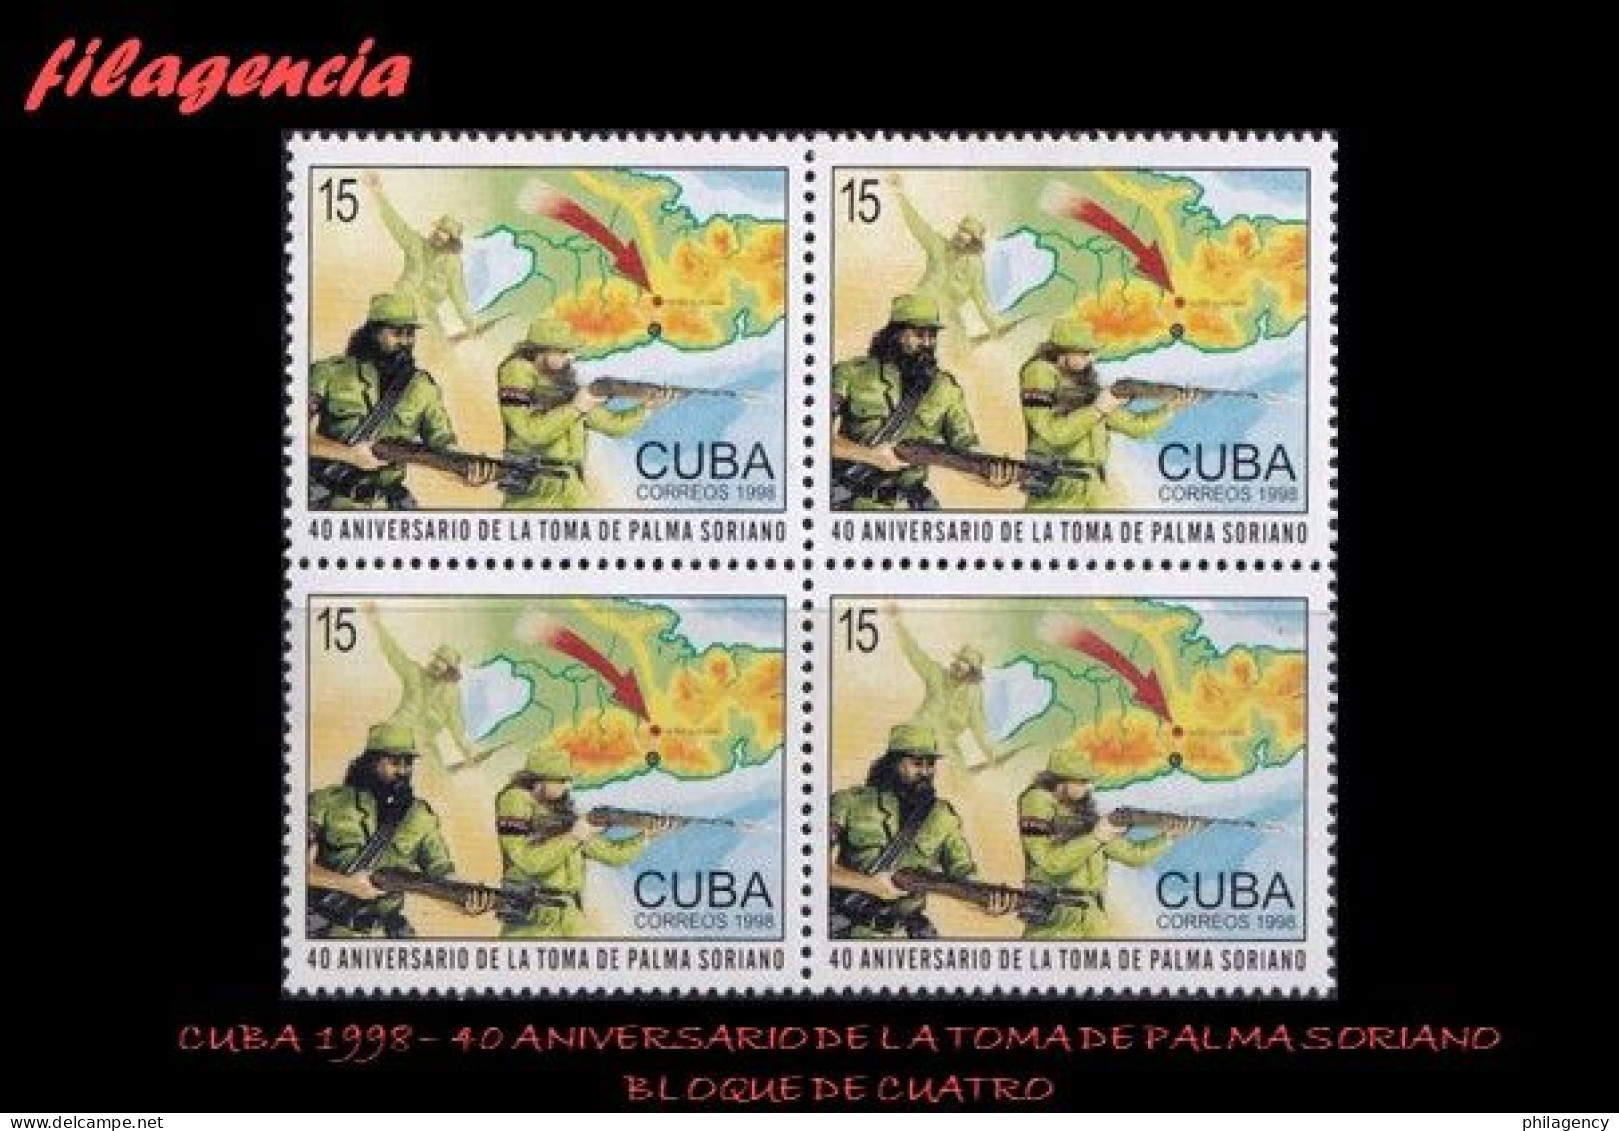 CUBA. BLOQUES DE CUATRO. 1998-35 40 ANIVERSARIO DE LA TOMA DE PALMA SORIANO - Ongebruikt